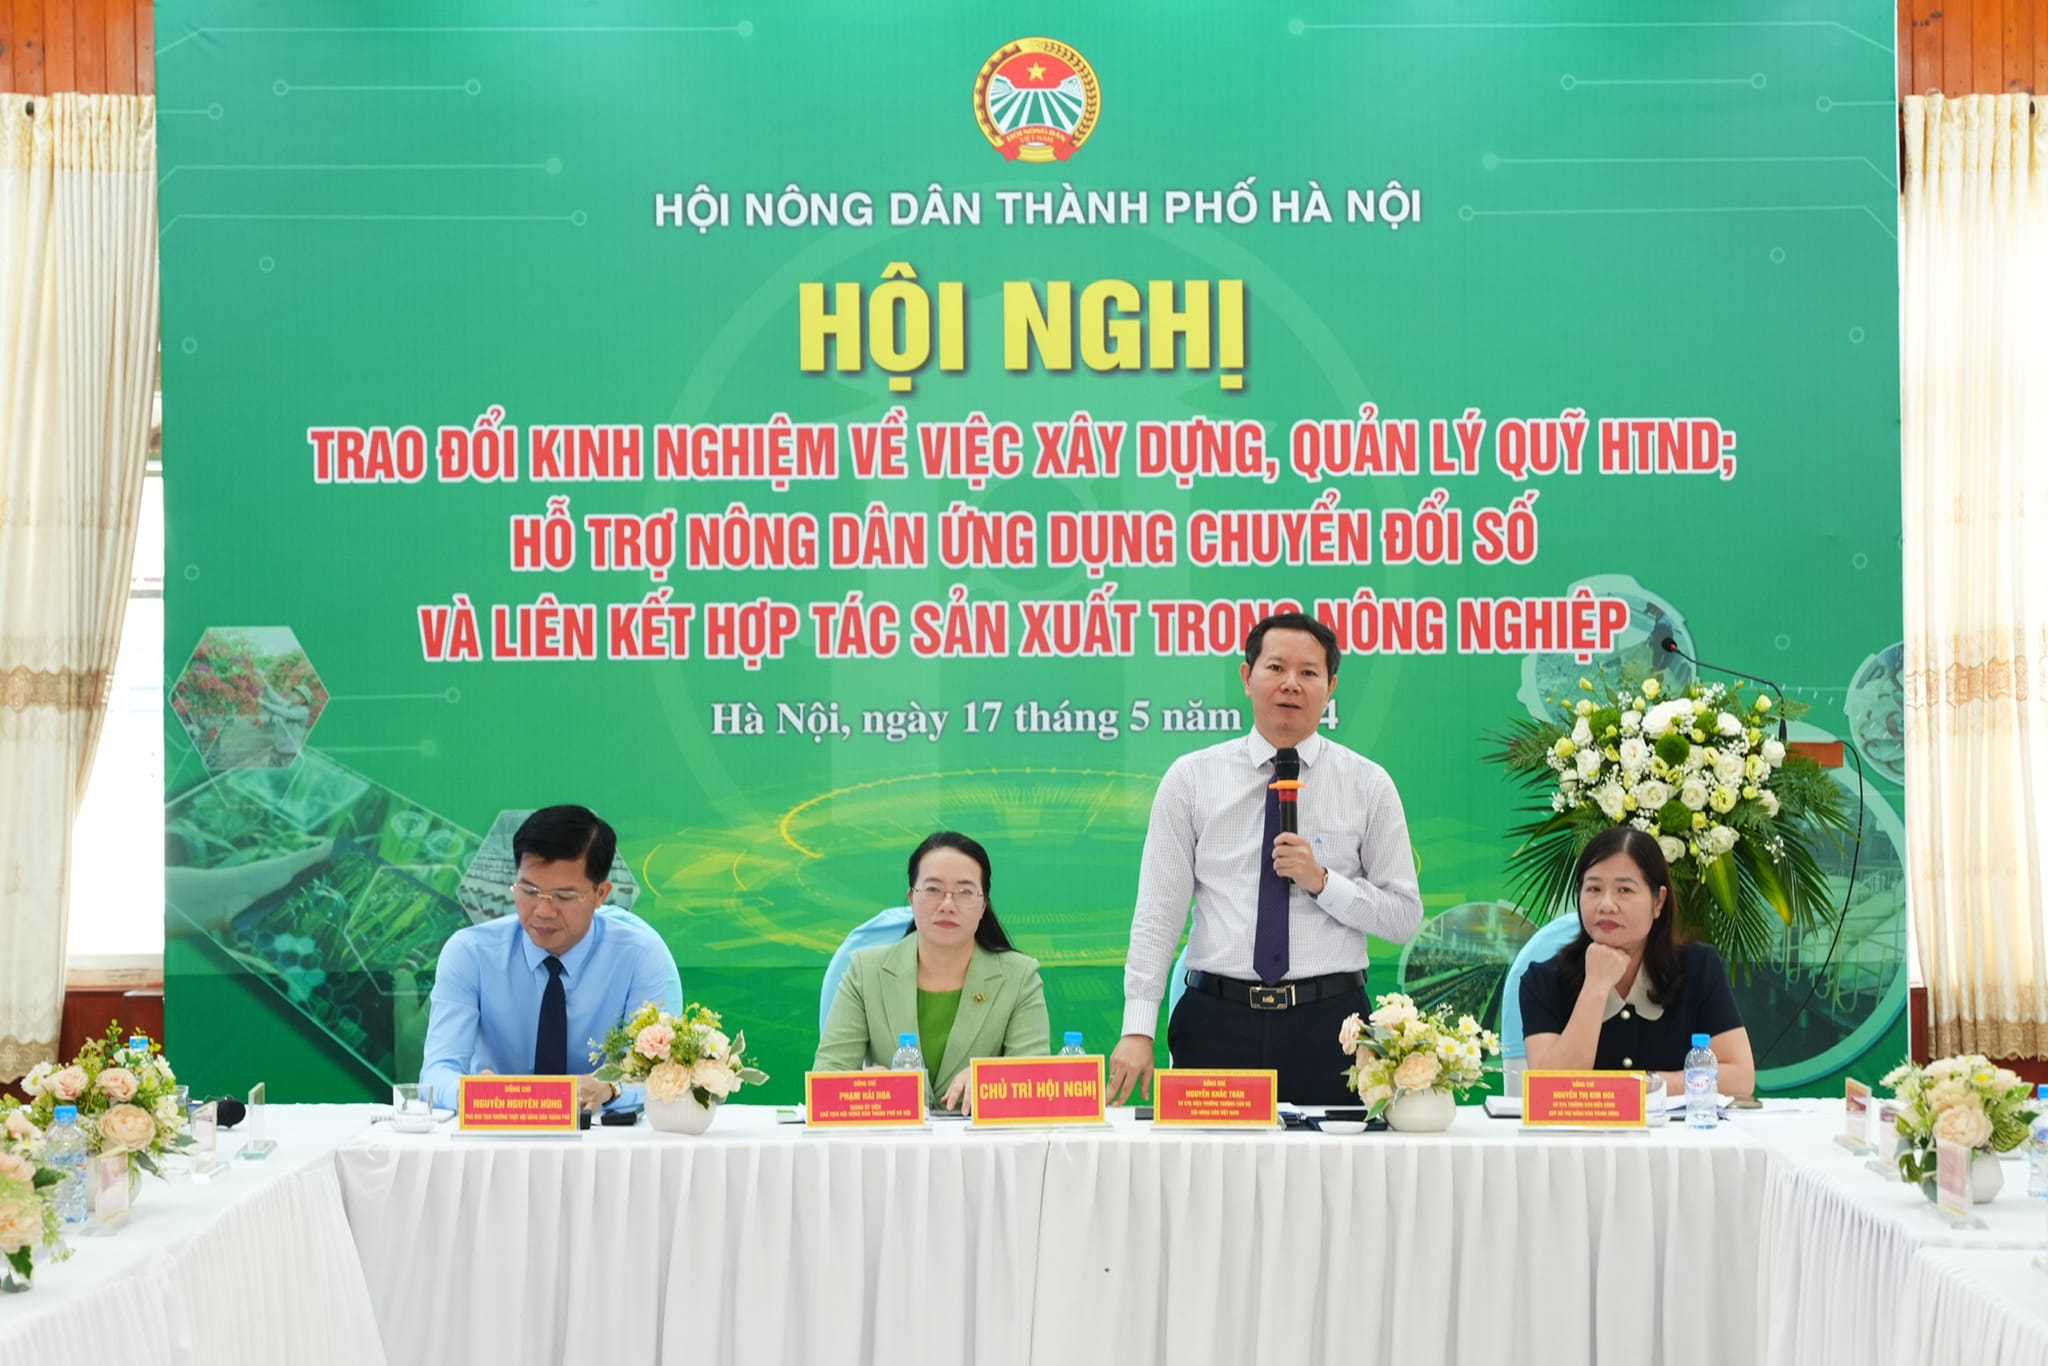 Hội Nông dân TP Hà Nội trao đổi kinh nghiệm xây dựng, quản lý Quỹ HTND, hỗ trợ nông dân chuyển đổi số, liên kết- Ảnh 1.